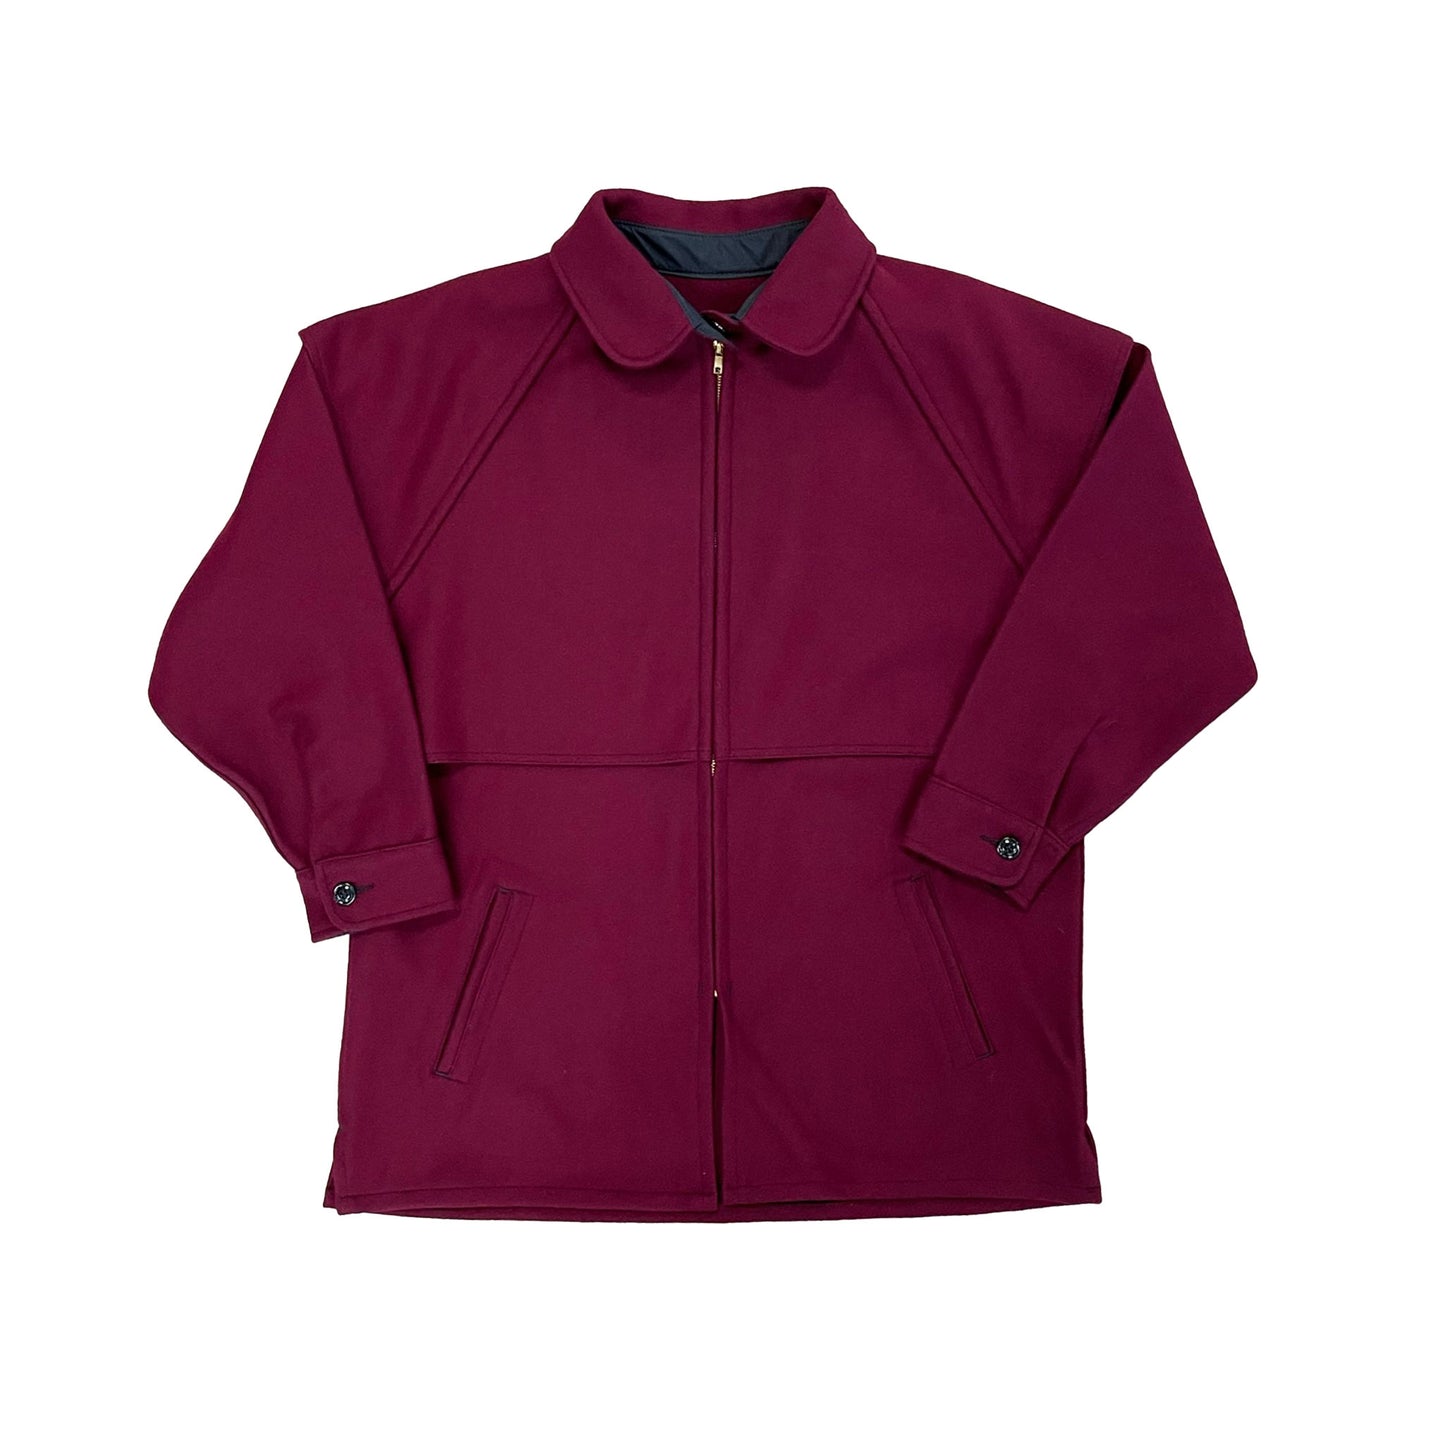 Johnson Woolen Mills Women's burgundy wool outback jacket